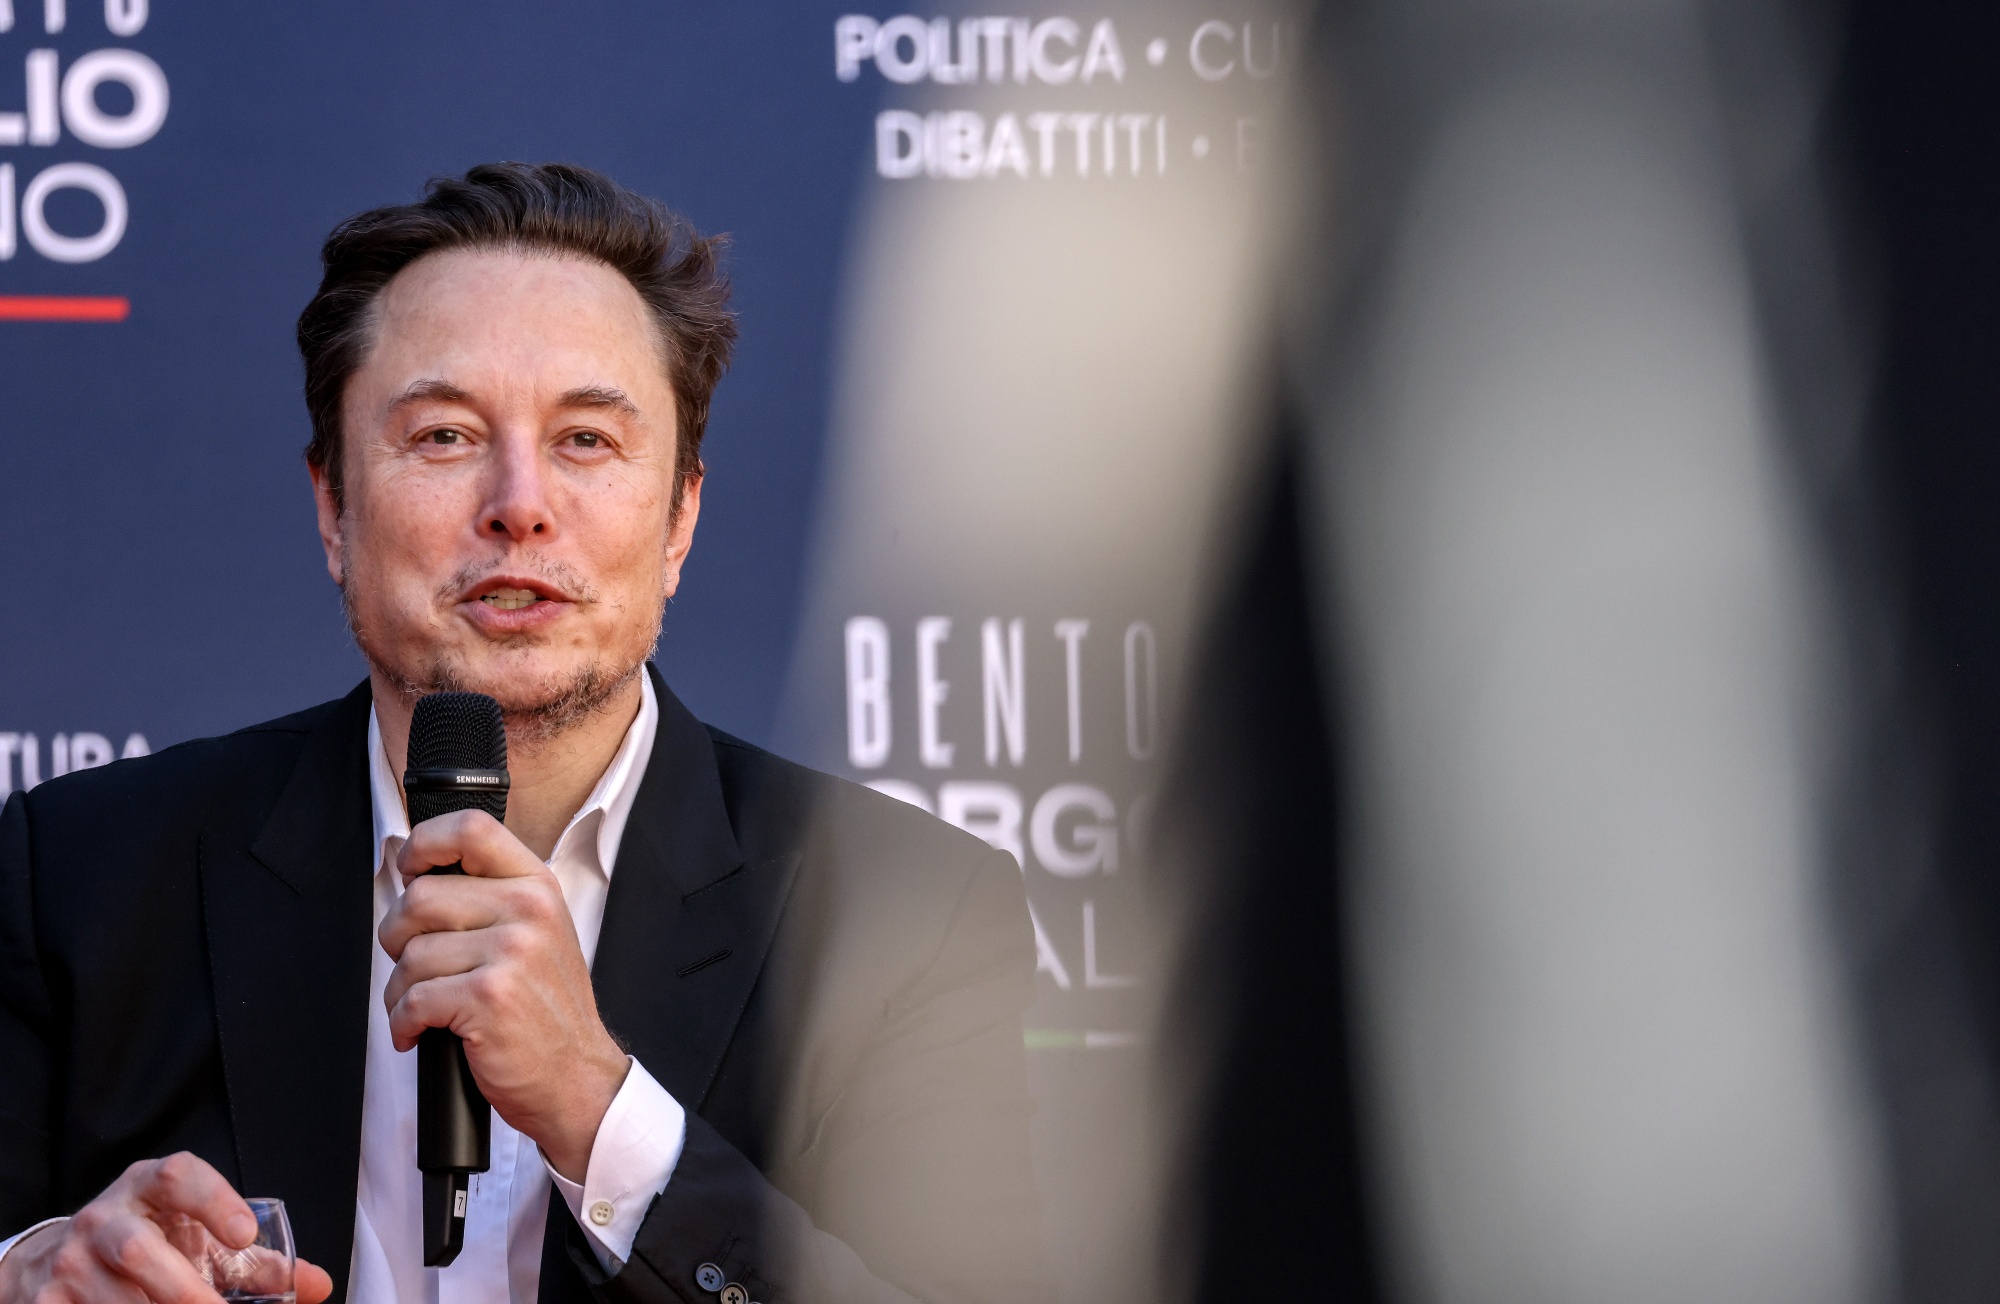 La xAI di Elon Musk chiede fino a 4 miliardi di dollari per competere con OpenAI